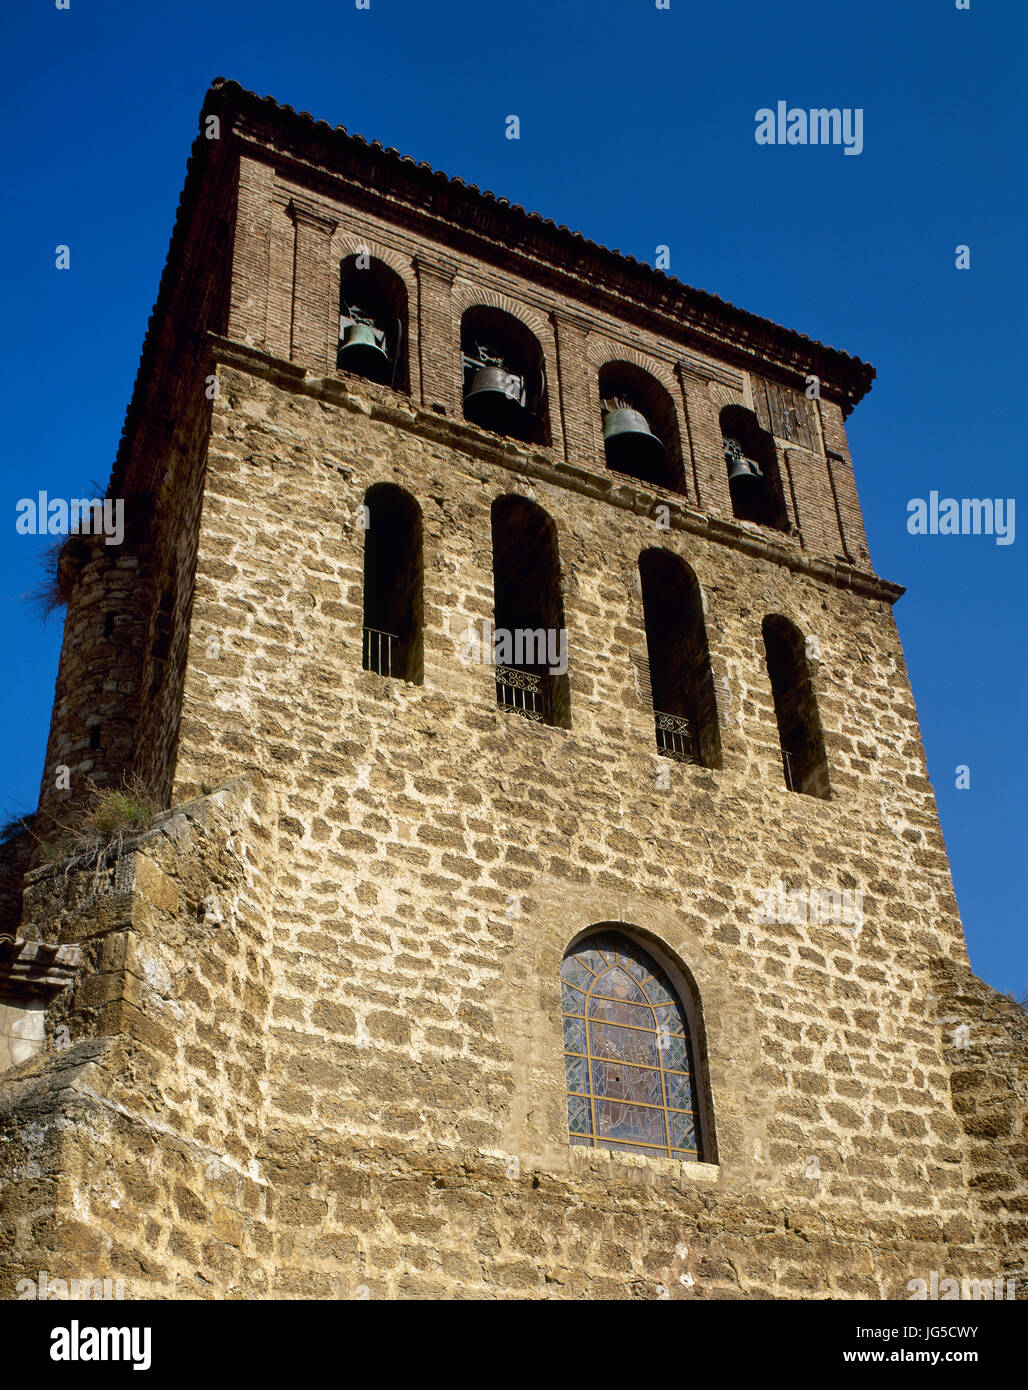 L'Espagne, La Rioja. Cervera del Rio Alhama. Église de San Gil, 15-17 e siècle. La tour du clocher, de style mudéjar. L'Espagne. Banque D'Images